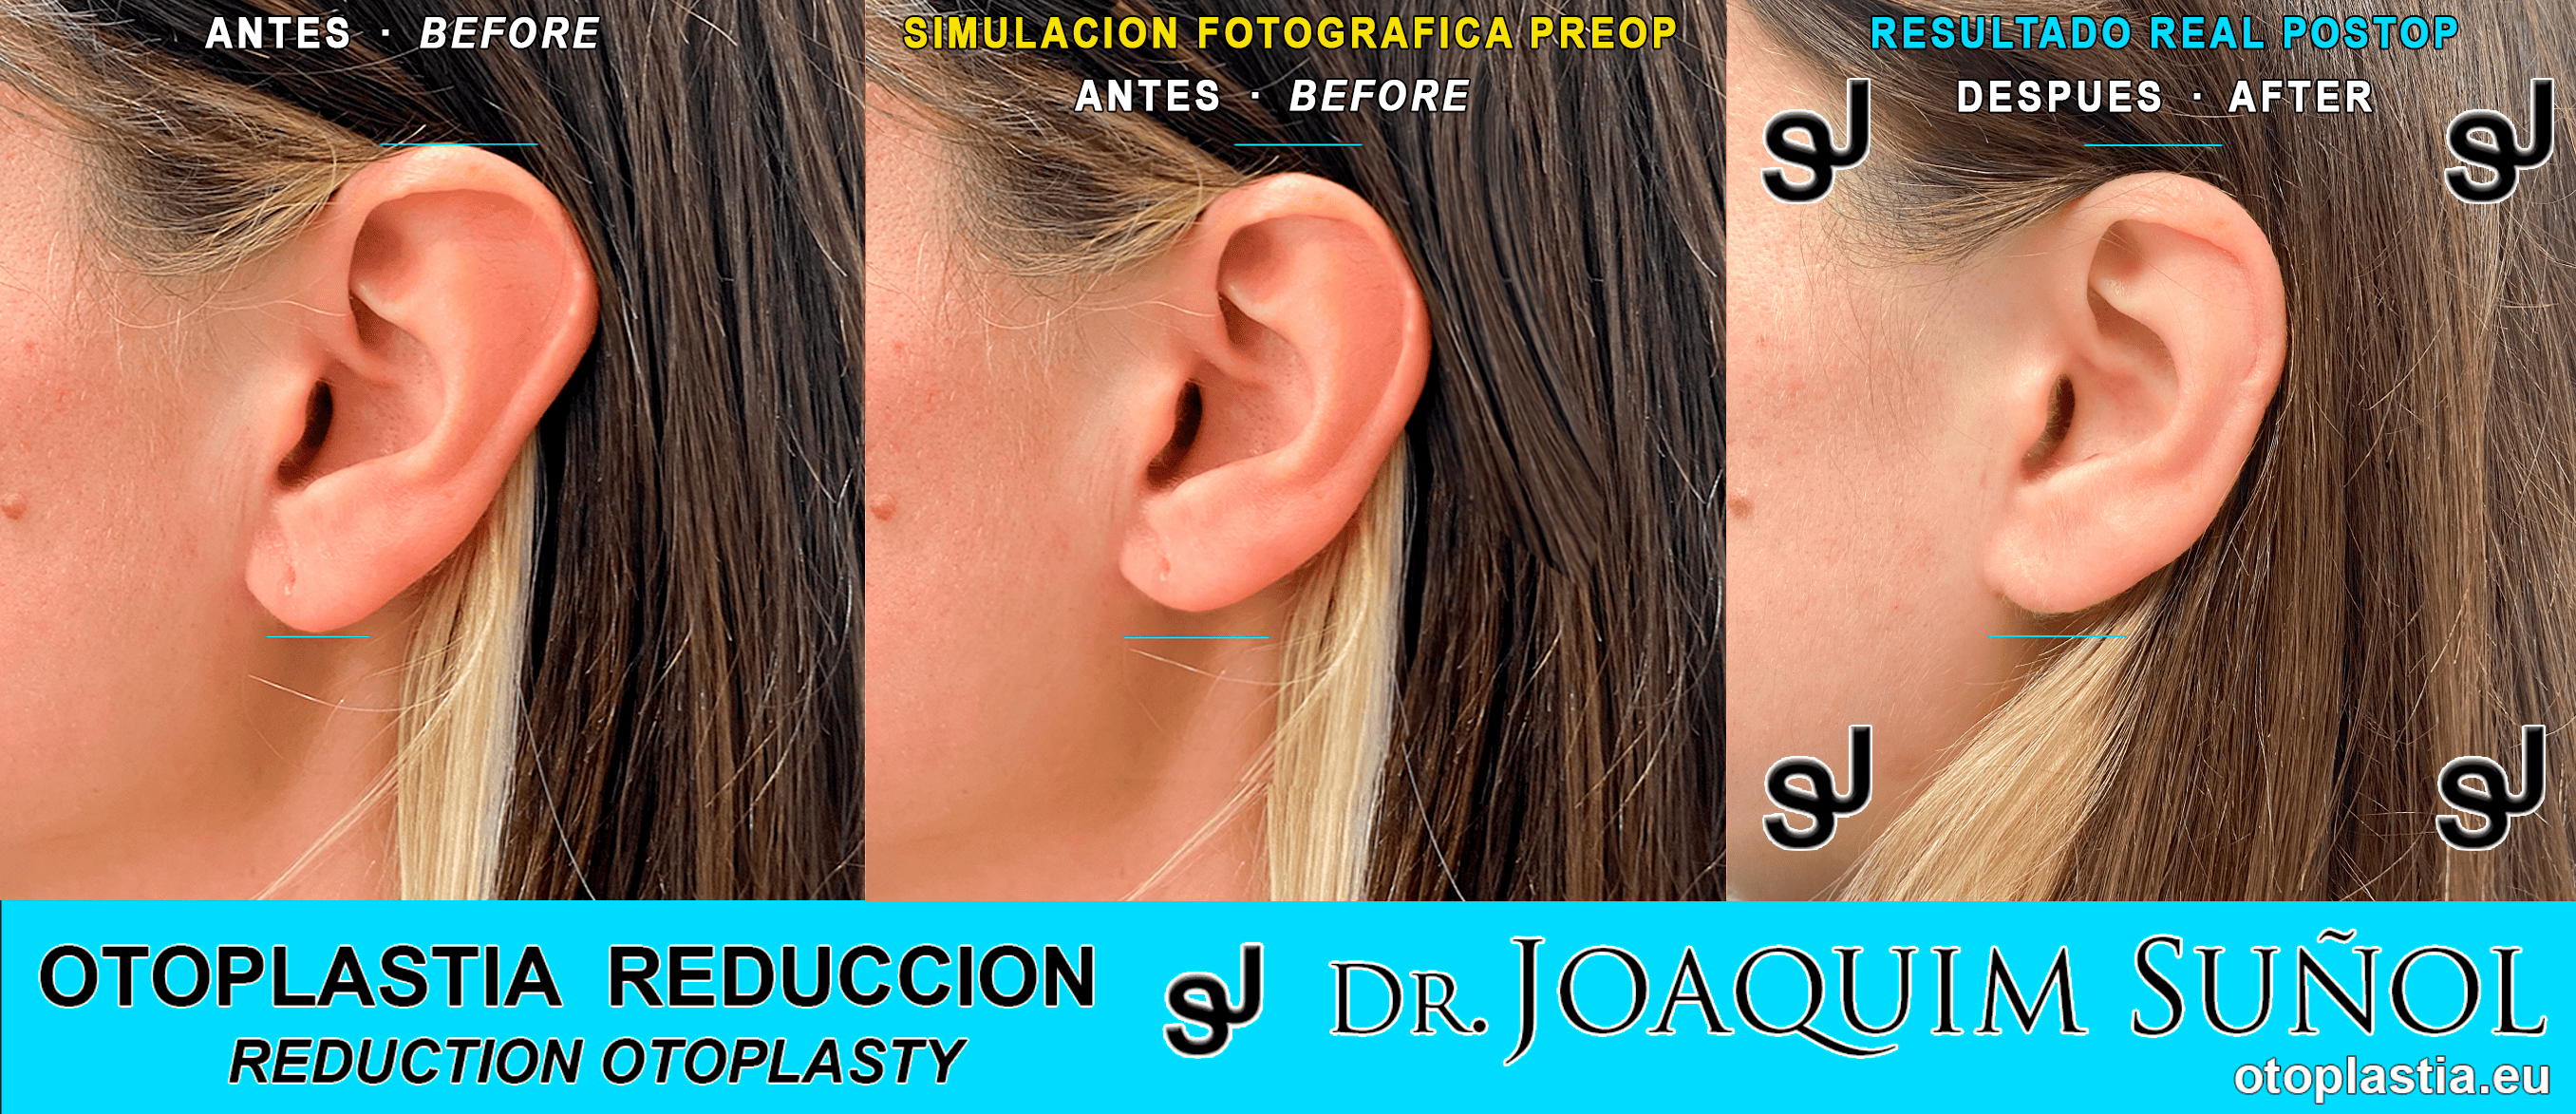 ear reduction otoplasty